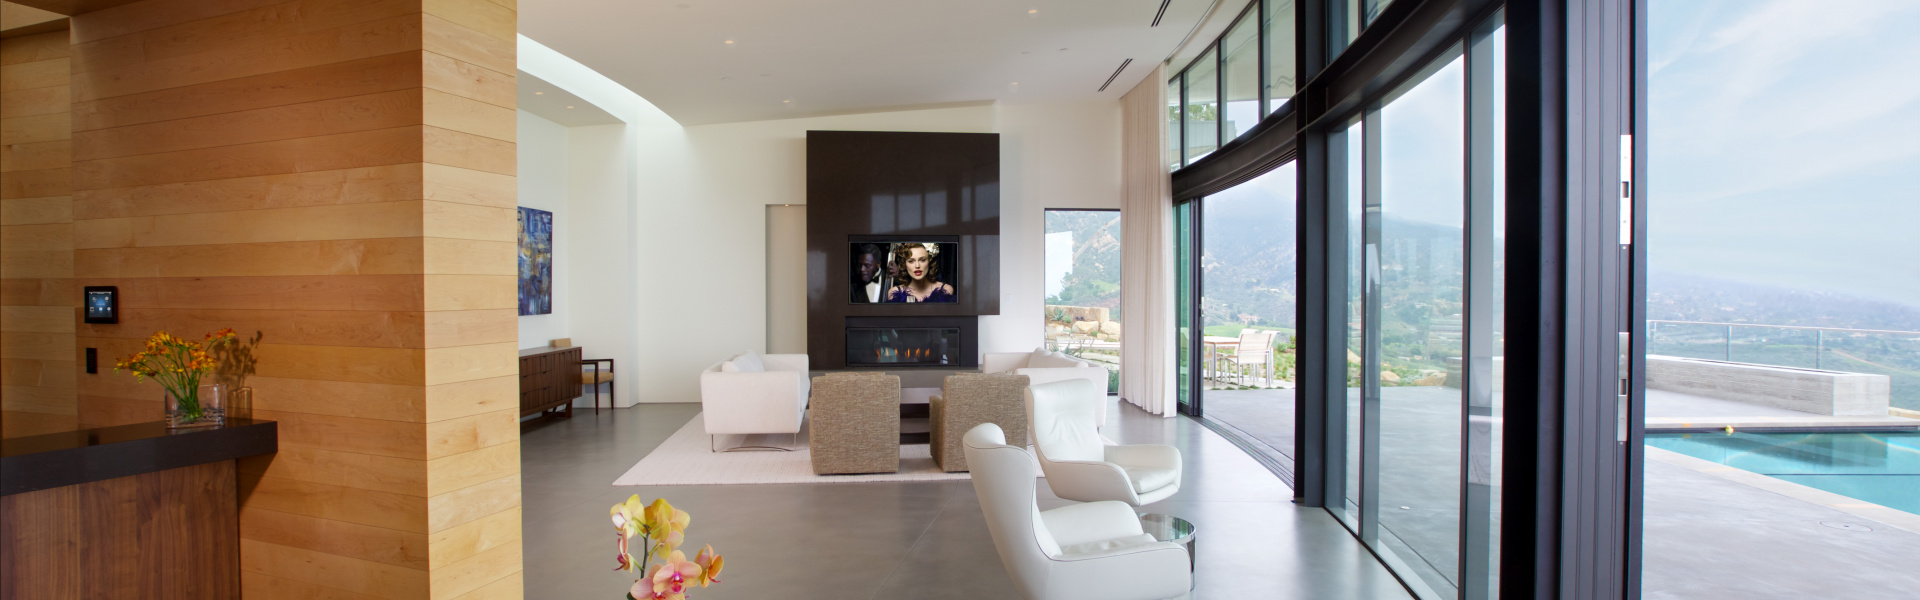 Smart home installation by Hi-Fi Club for Santa Barbara